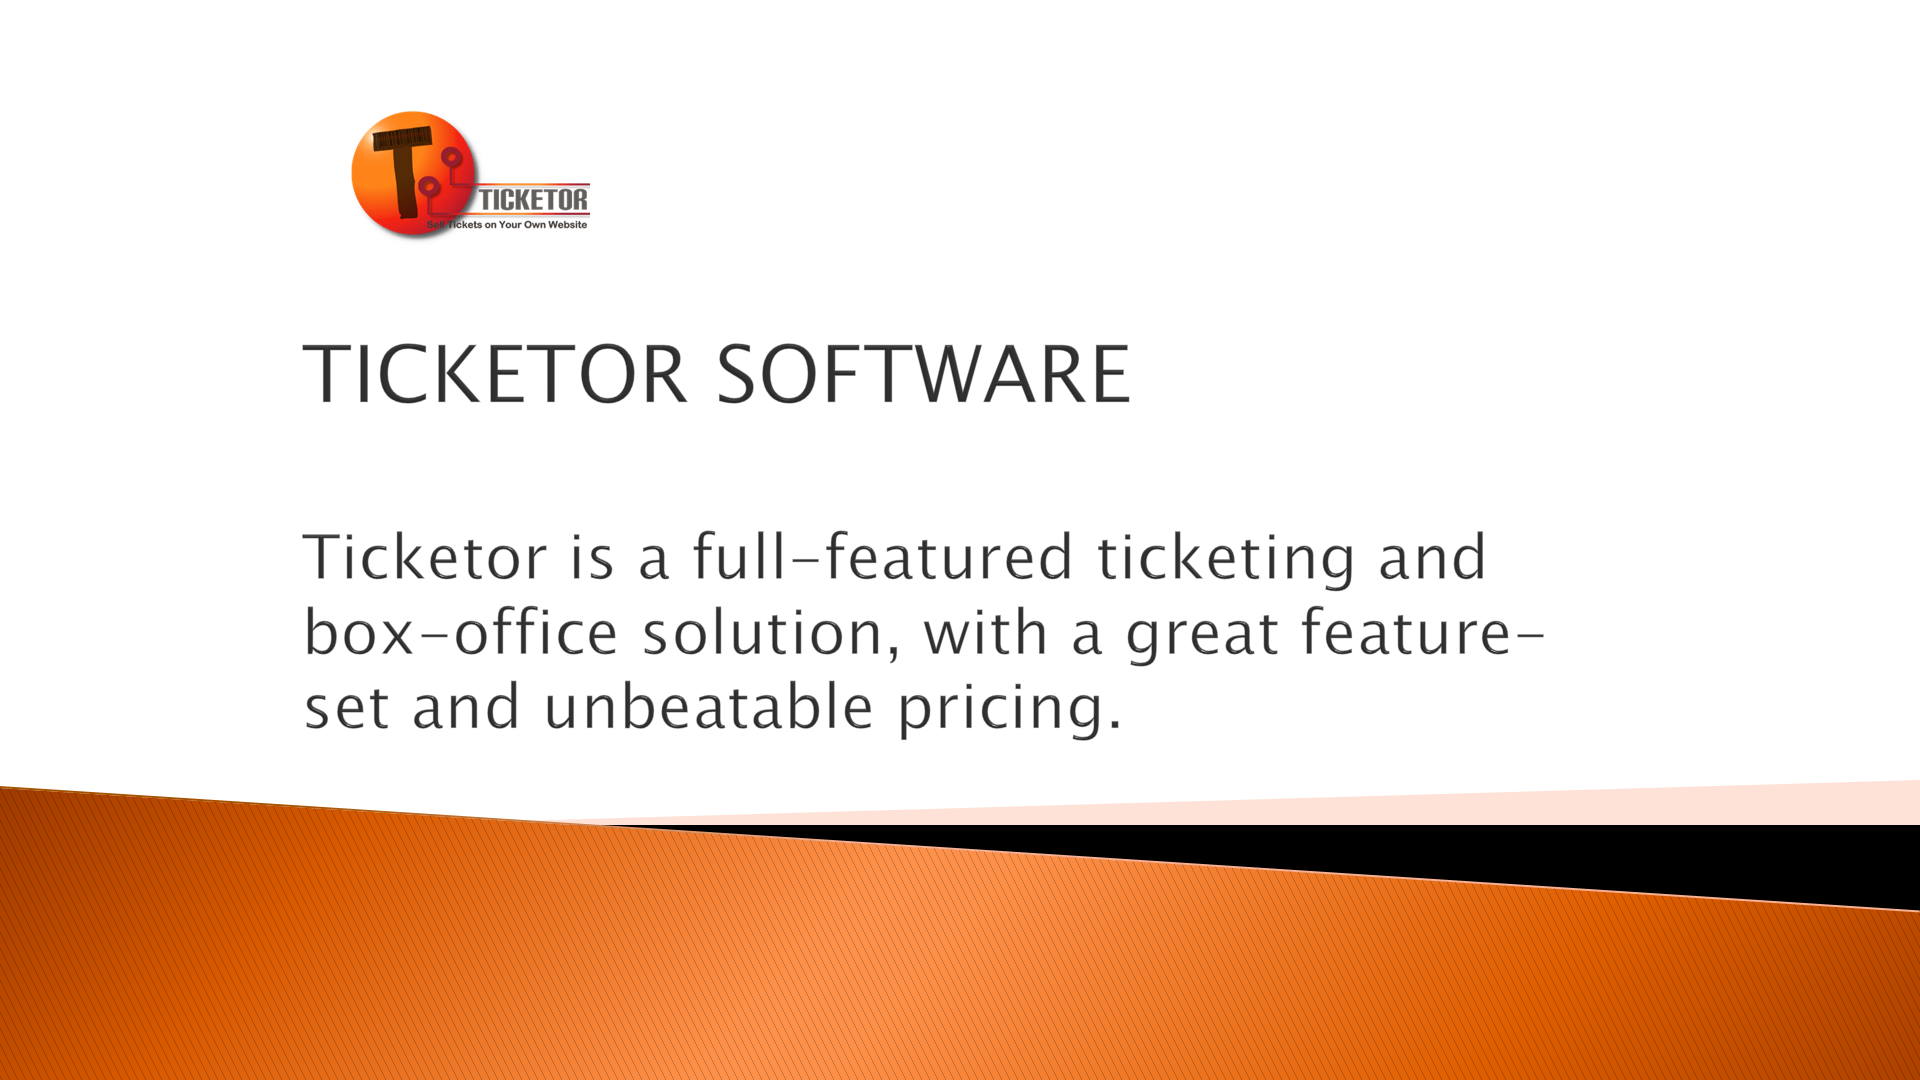 Ticketor as a Software